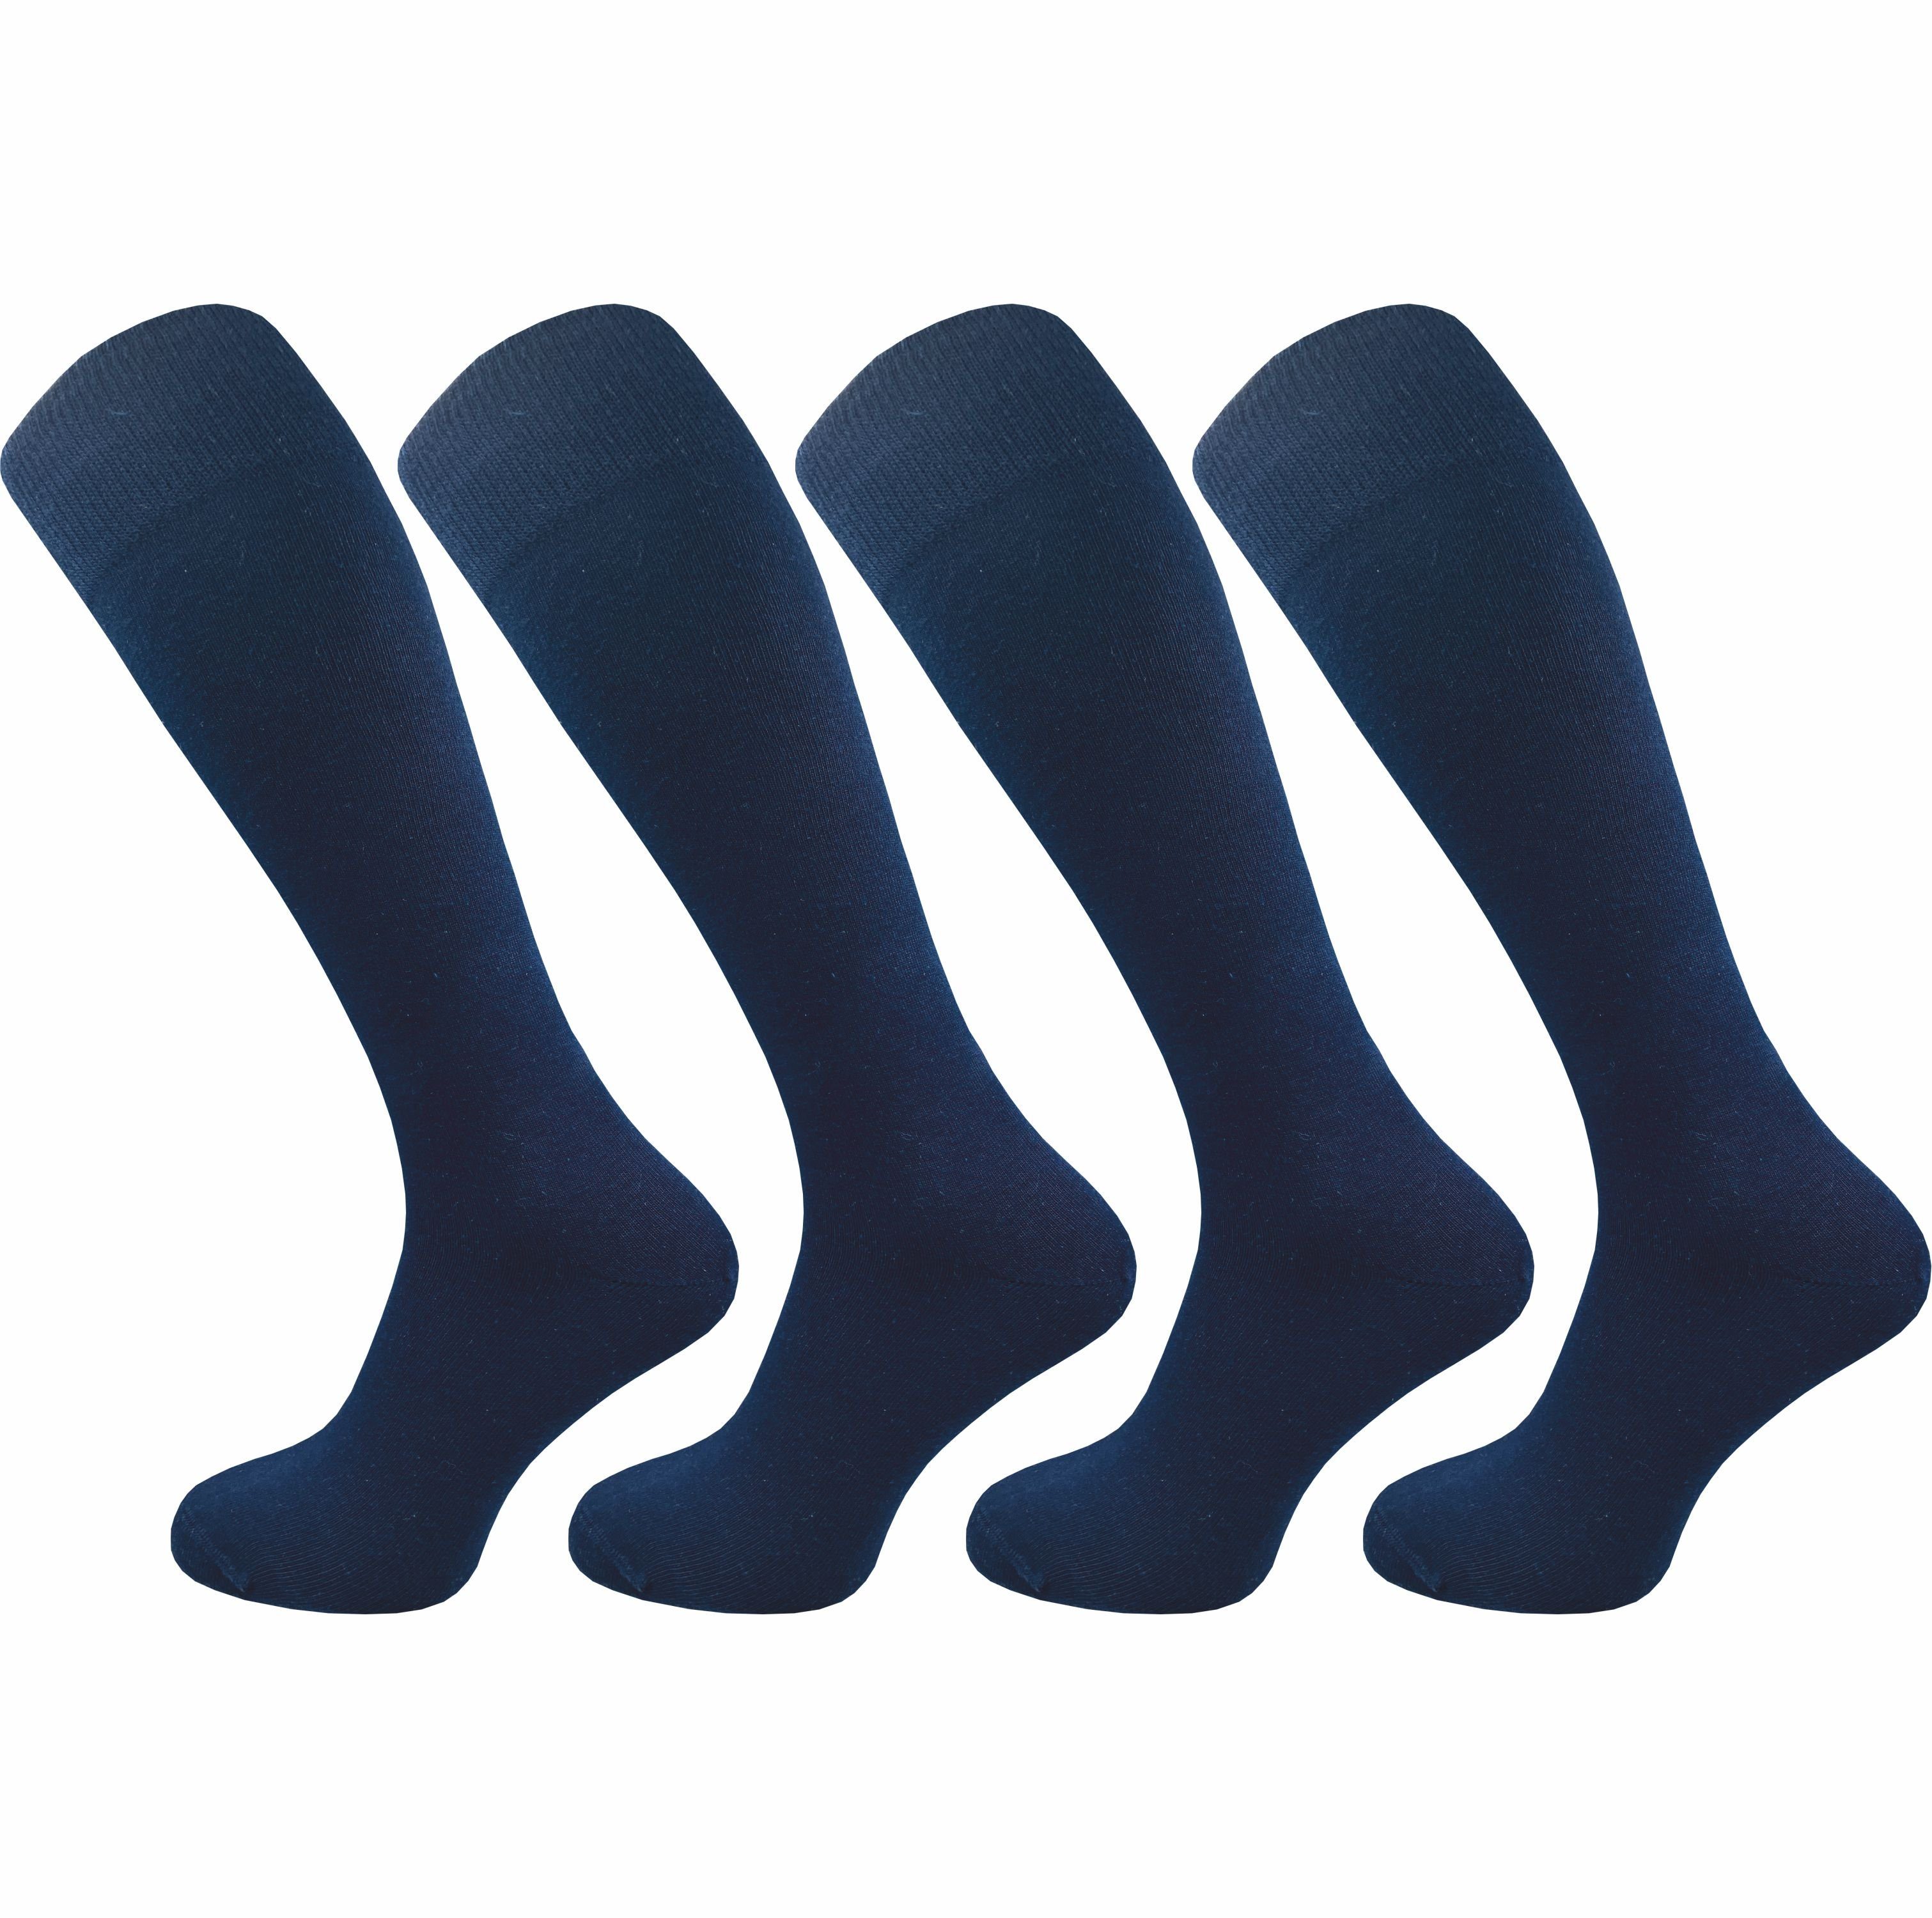 GAWILO Kniestrümpfe für Herren aus Baumwolle - extra weich & ohne drückende Naht (4 Paar) Lange Socken mit speziellem Komfortbund, der nicht einschneidet blau